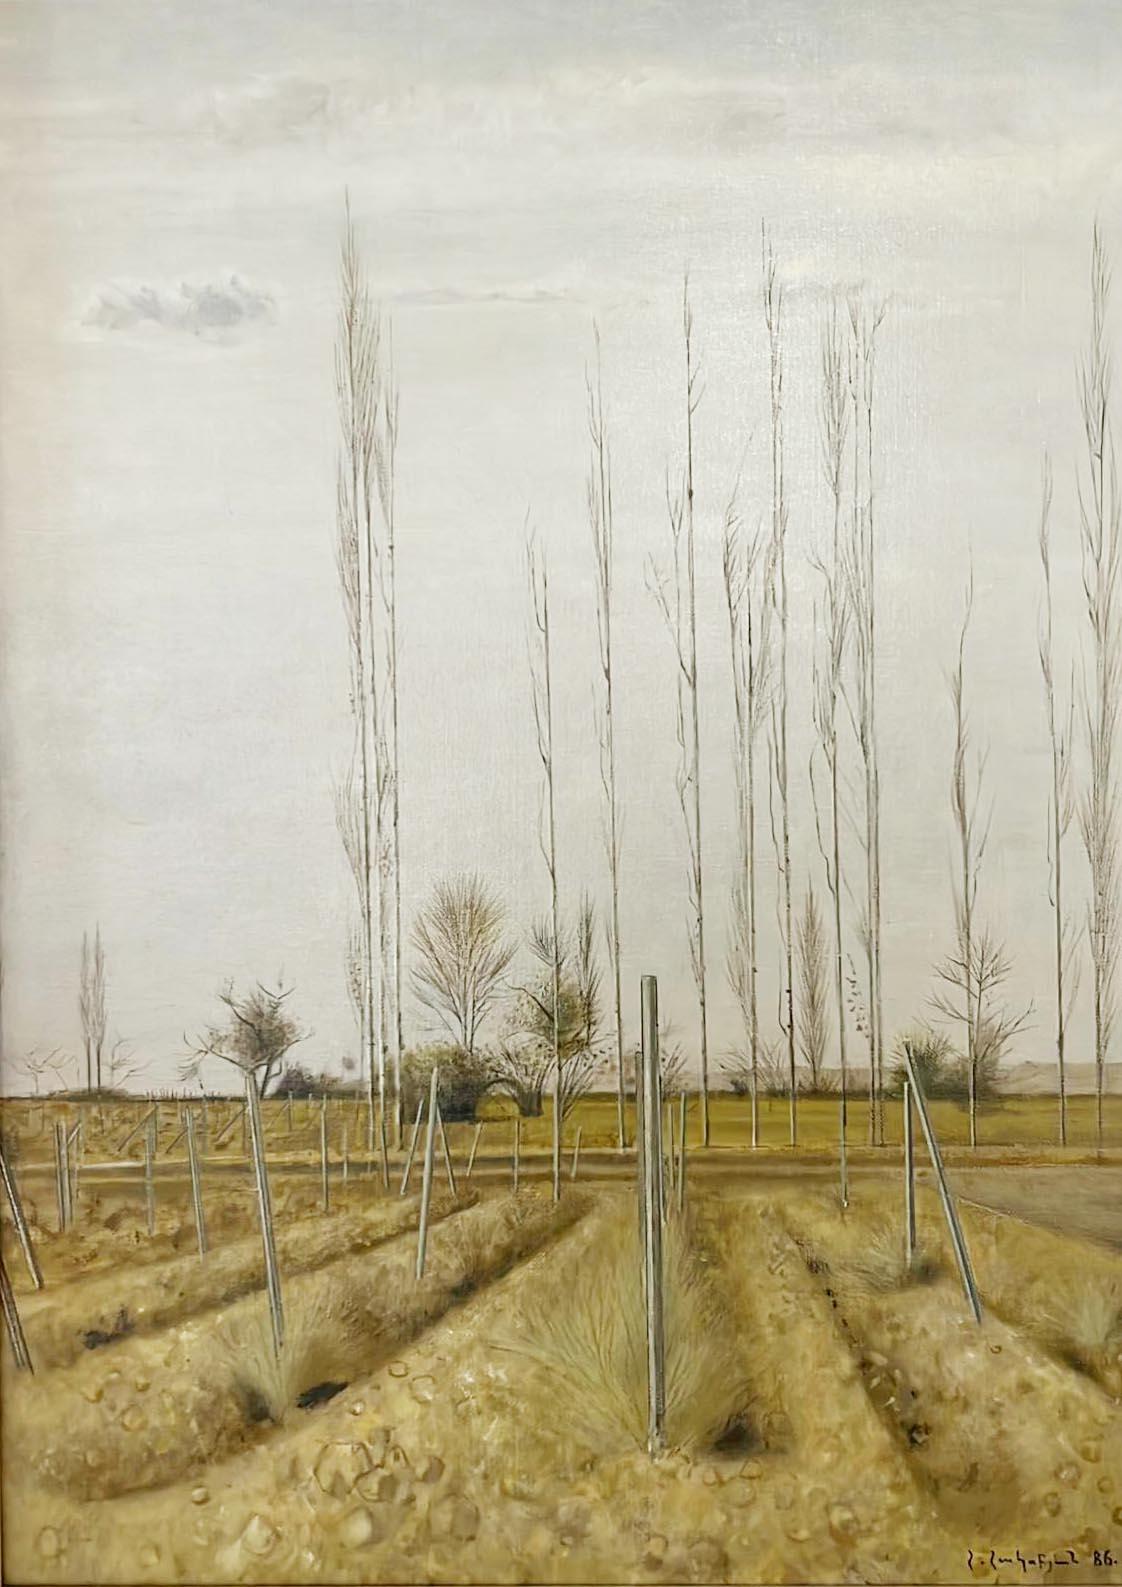 Le paysage de Hagop Hagopian de 1986, exécuté à l'huile sur toile, est un exemple de sa composition typique. Le tableau est signé dans le coin inférieur droit, ce qui témoigne de son souci du détail et de son savoir-faire. La palette de couleurs